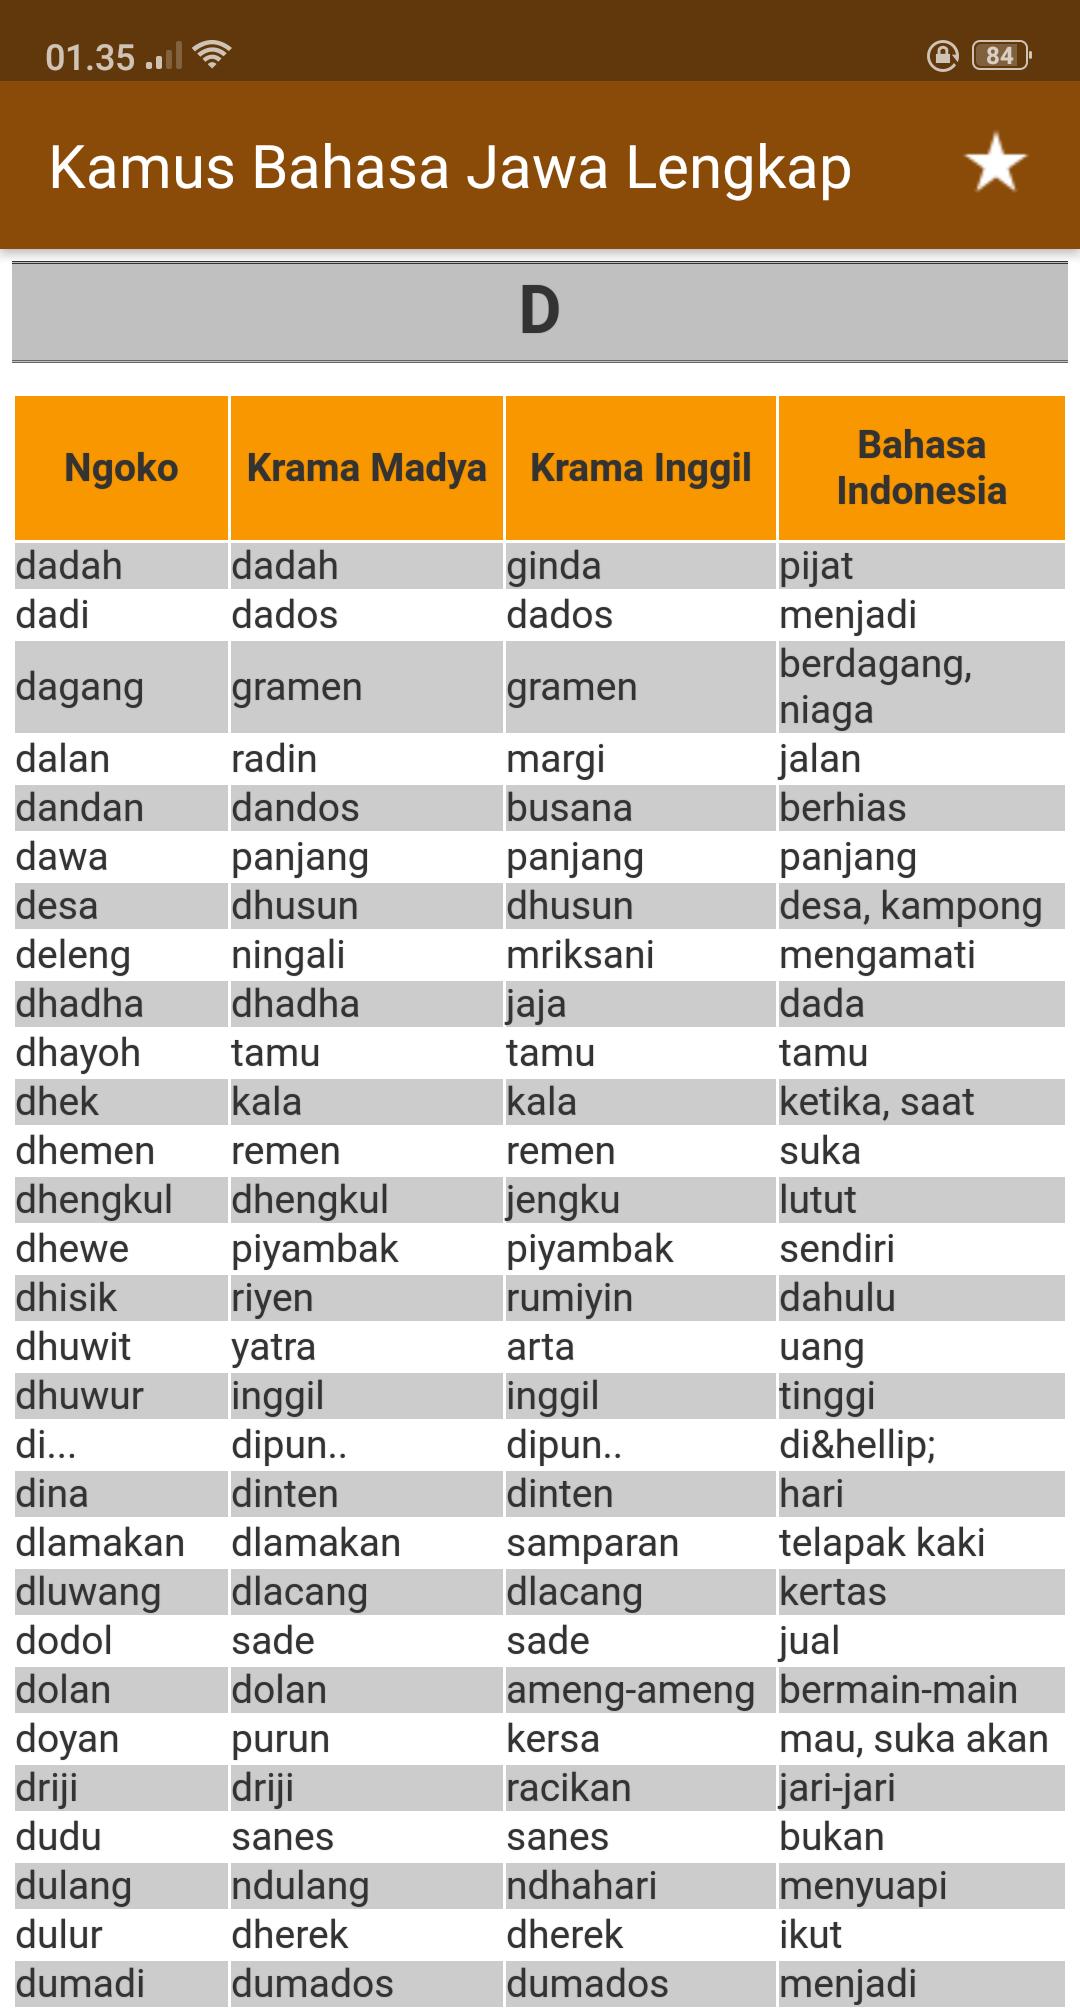 Kamus Bahasa Jawa Lengkap for Android - APK Download